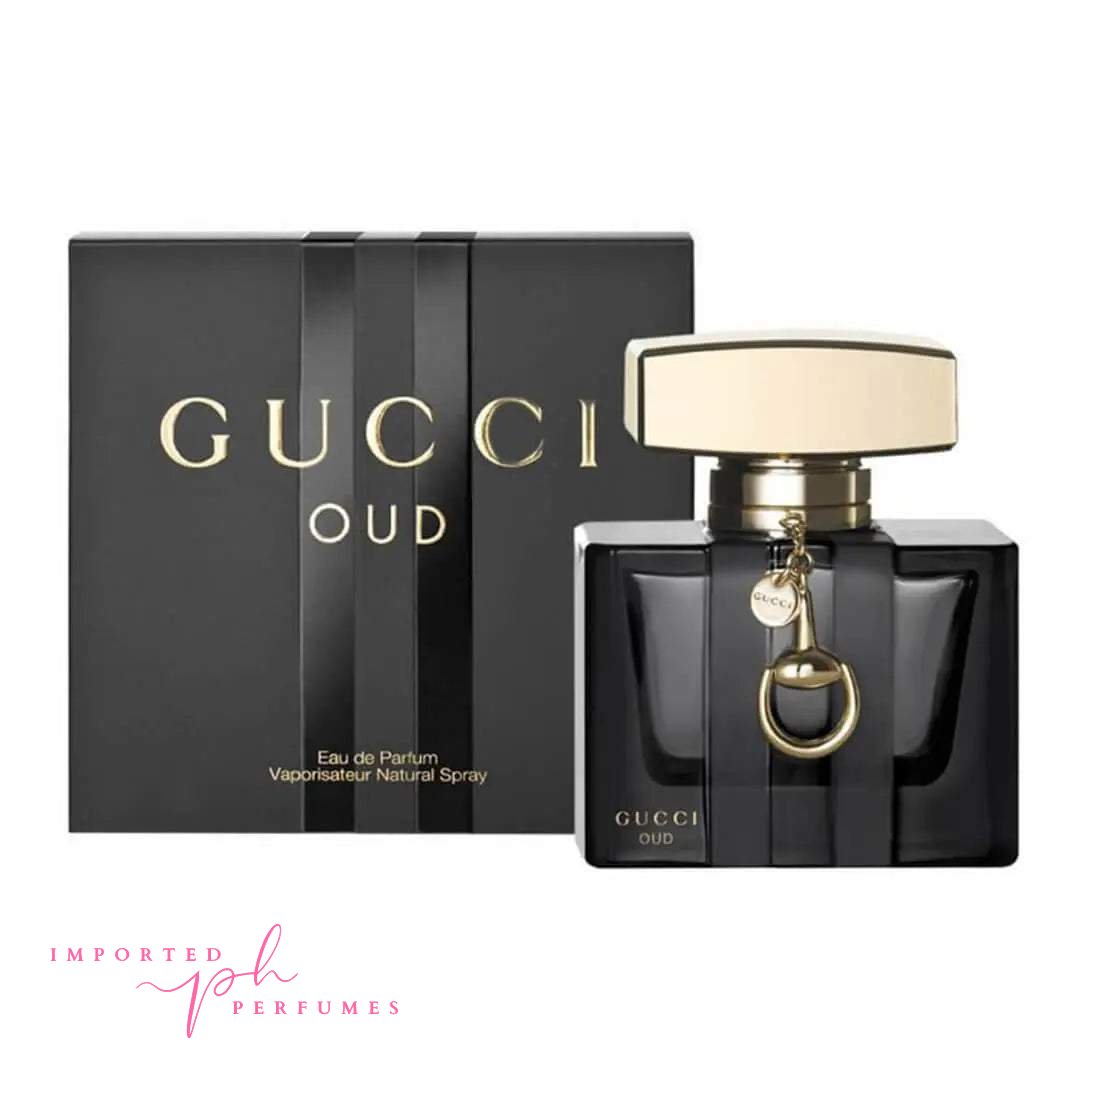 Gucci Oud Eau De Parfum Unisex Natural Spray 75ml-Imported Perfumes Co-Gucci,Gucci Oud,Men,Oud,Unisex,Women